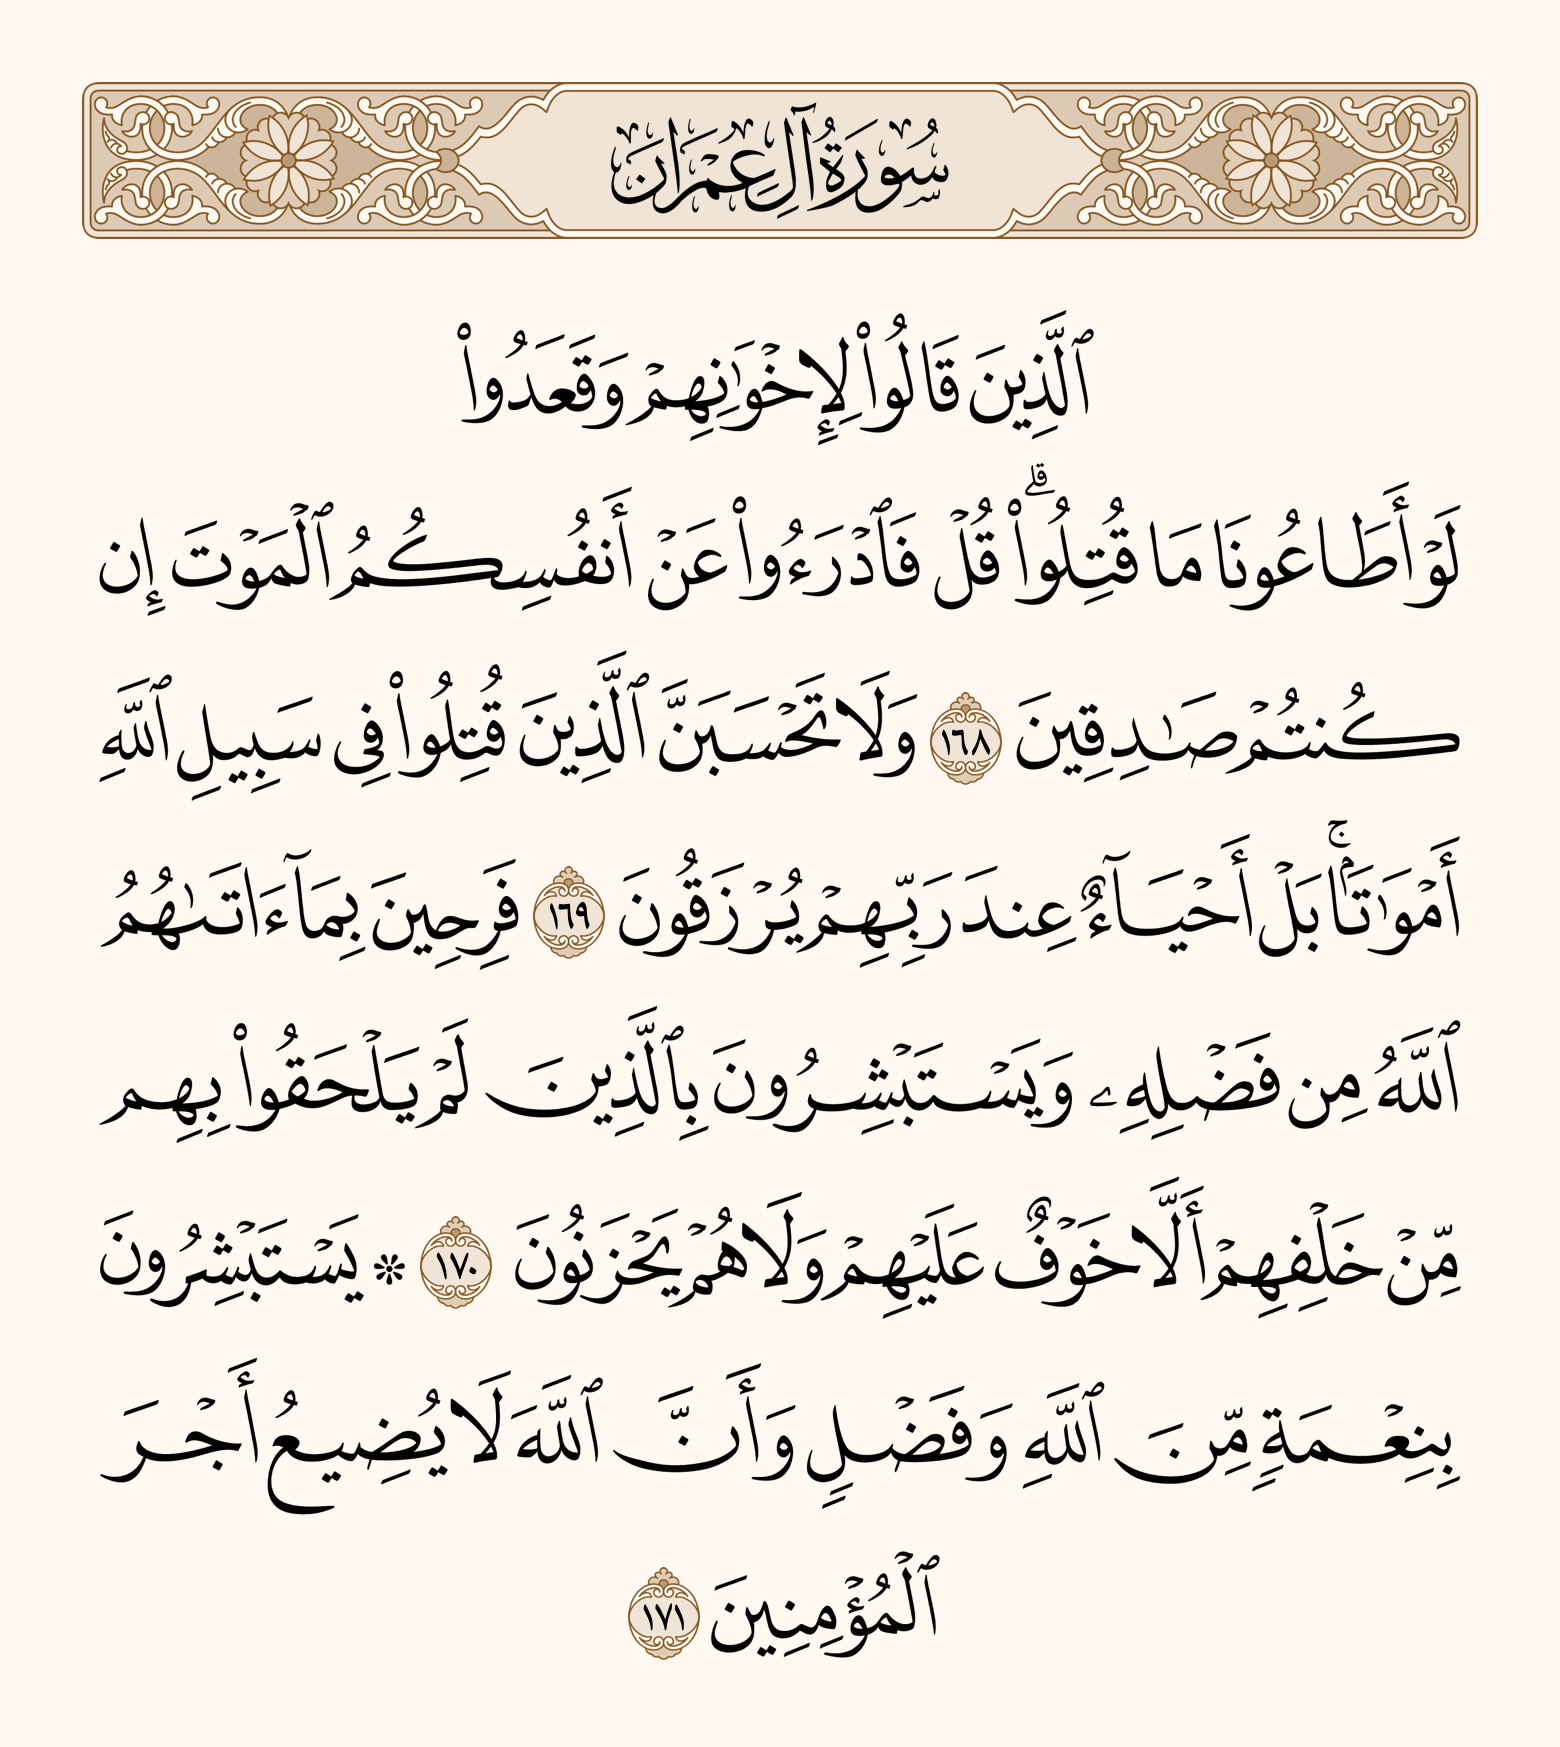 Da iPhoneIslam.com, il Sacro Corano in arabo con caratteri arabi